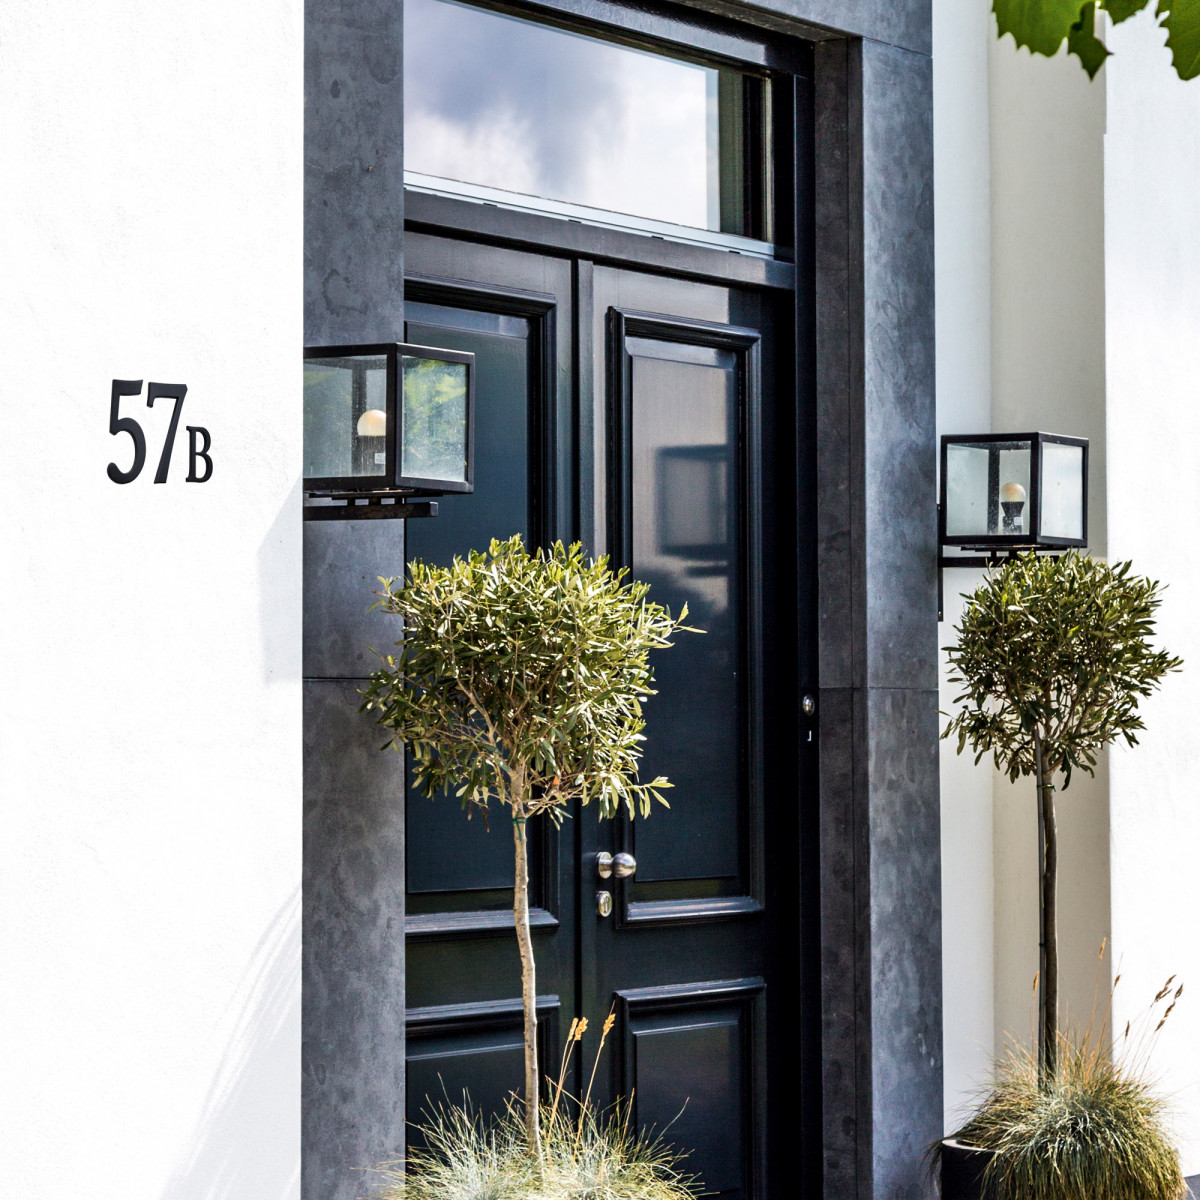 Grand numéro 6 de maison - montage invisible - numéros de maison en aluminium galvanisé - 19 cm de hauteur | Nostalux.fr